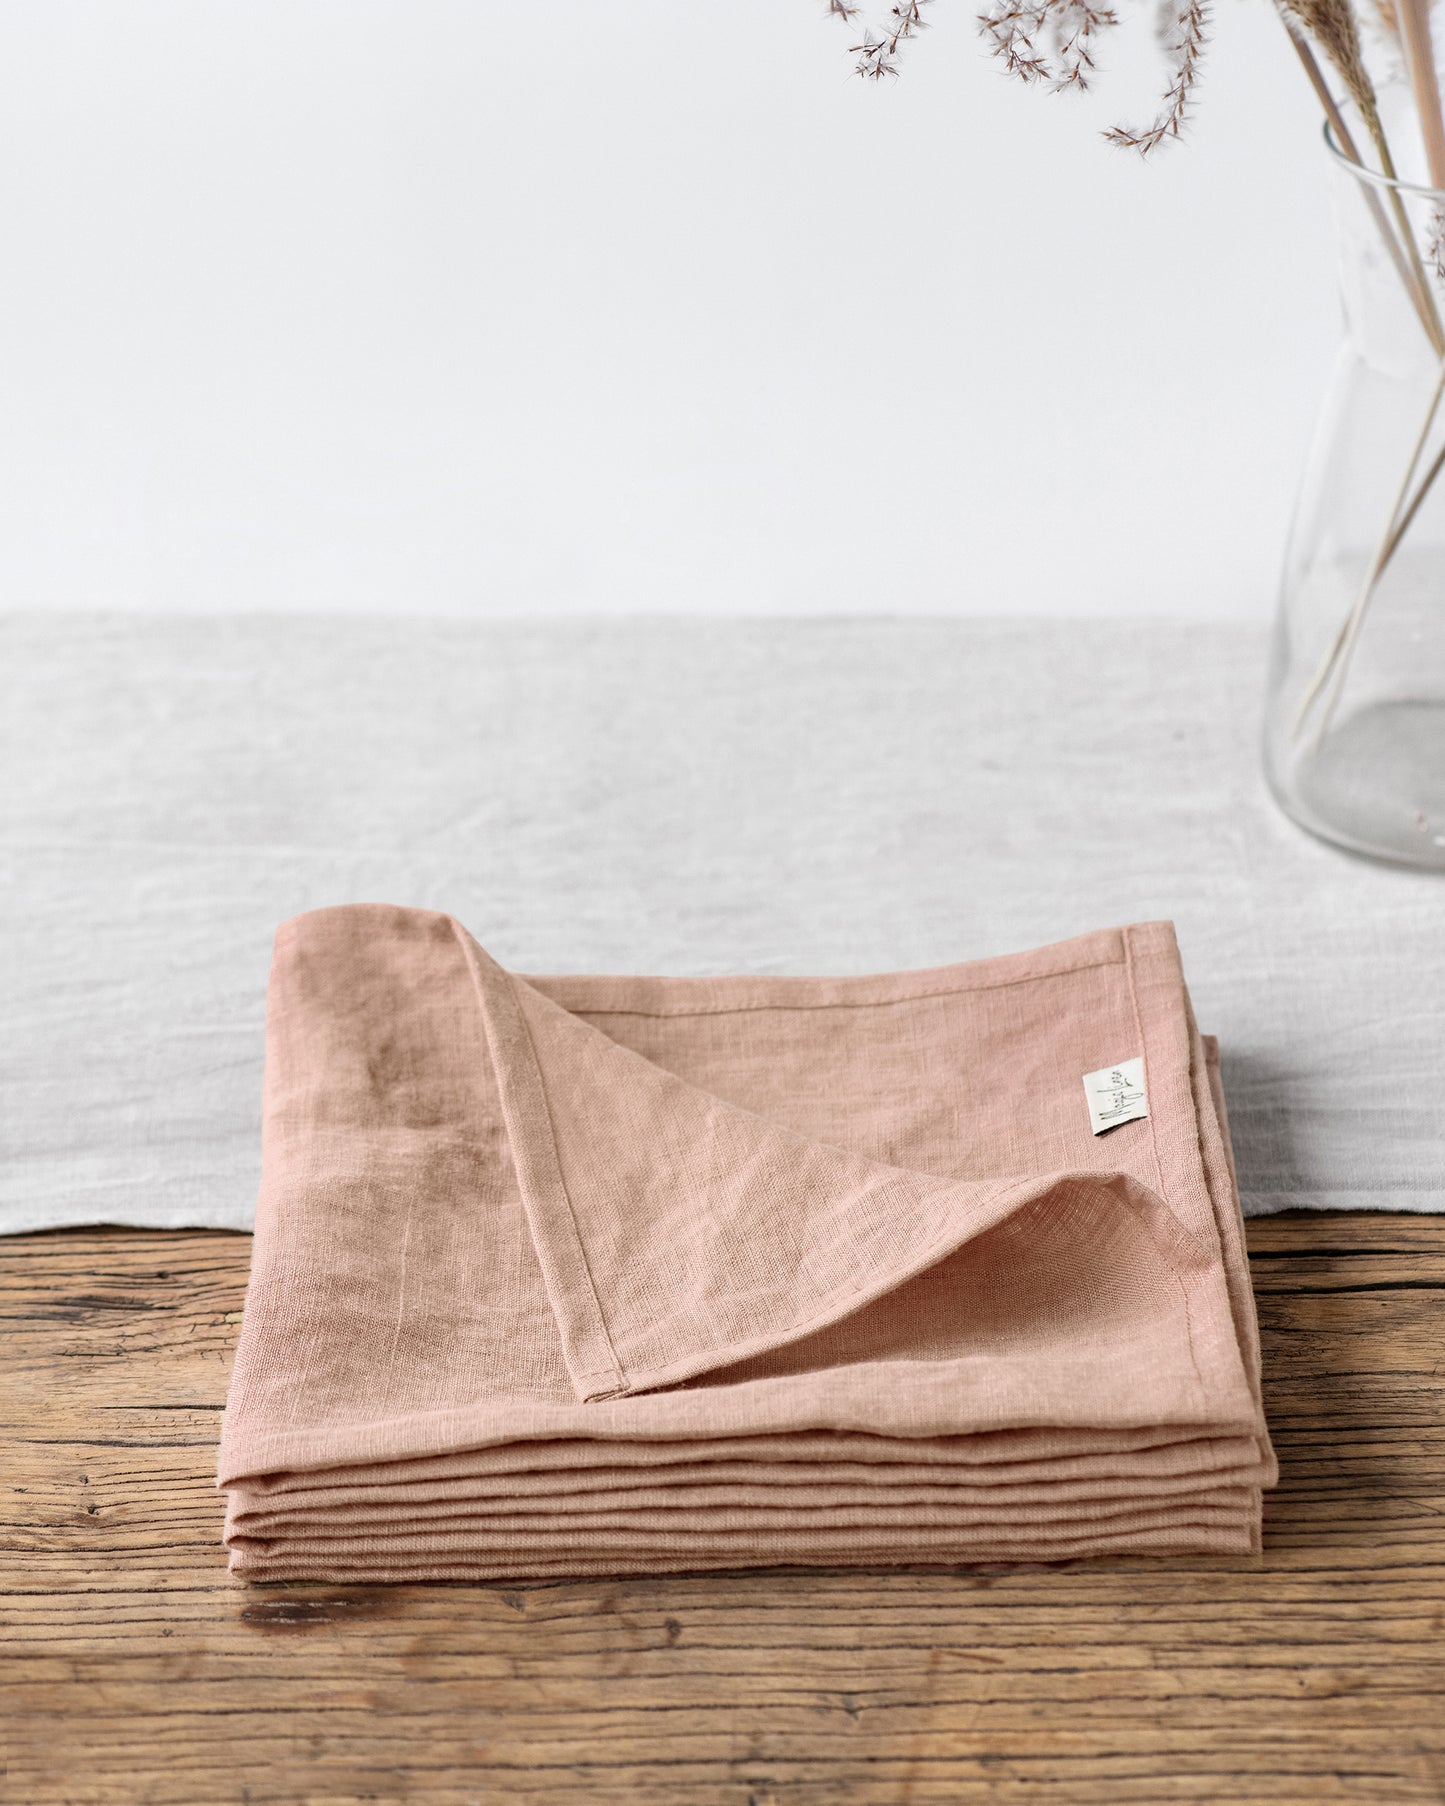 Peach linen napkin set of 2 - MagicLinen